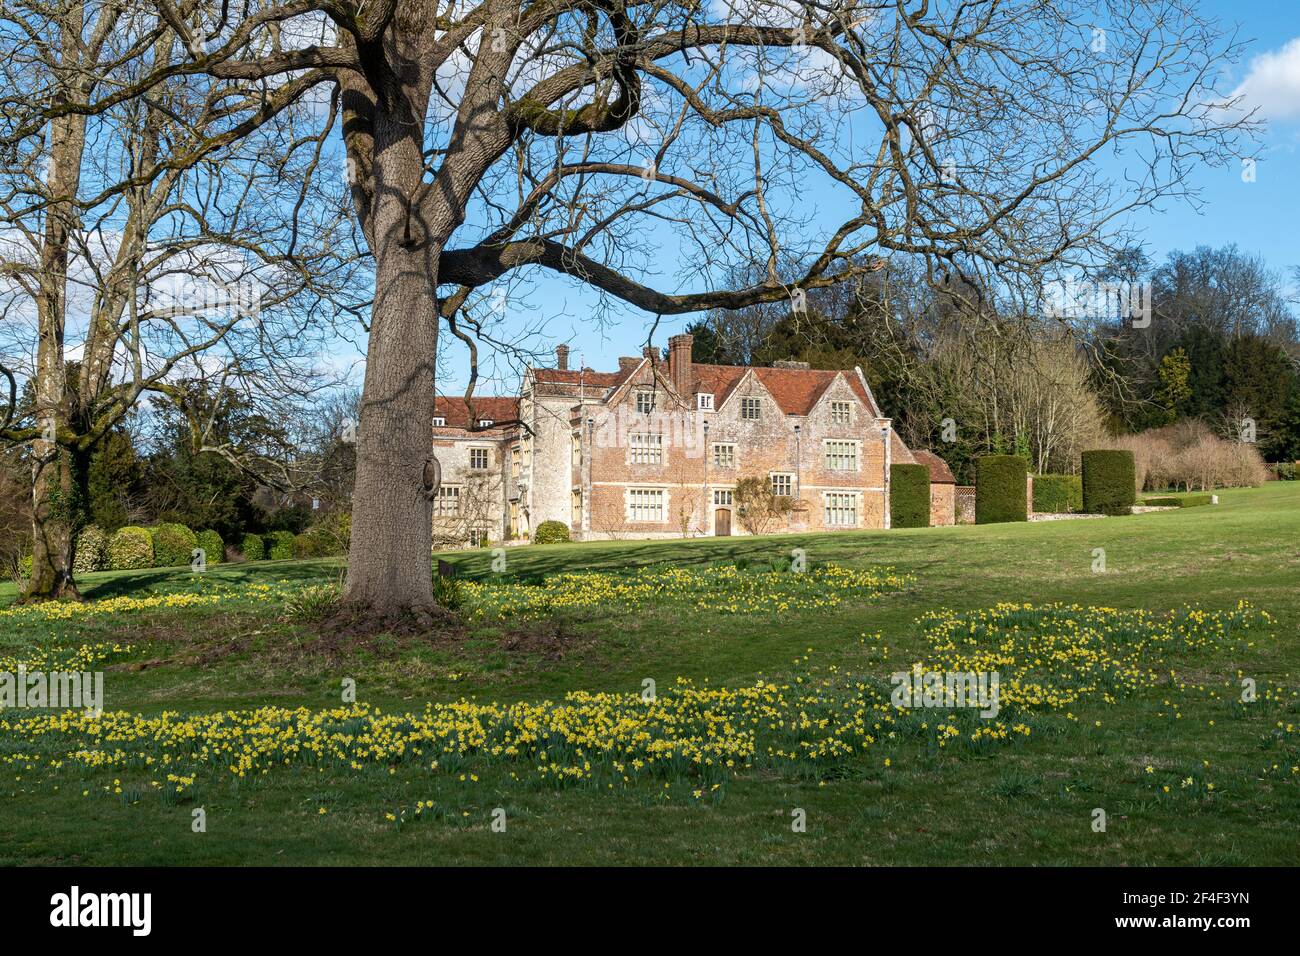 Chawton House, una residenza elisabettiana di grado ll* in Hampshire, Inghilterra, Regno Unito, in primavera o marzo con narcisi in fiore Foto Stock